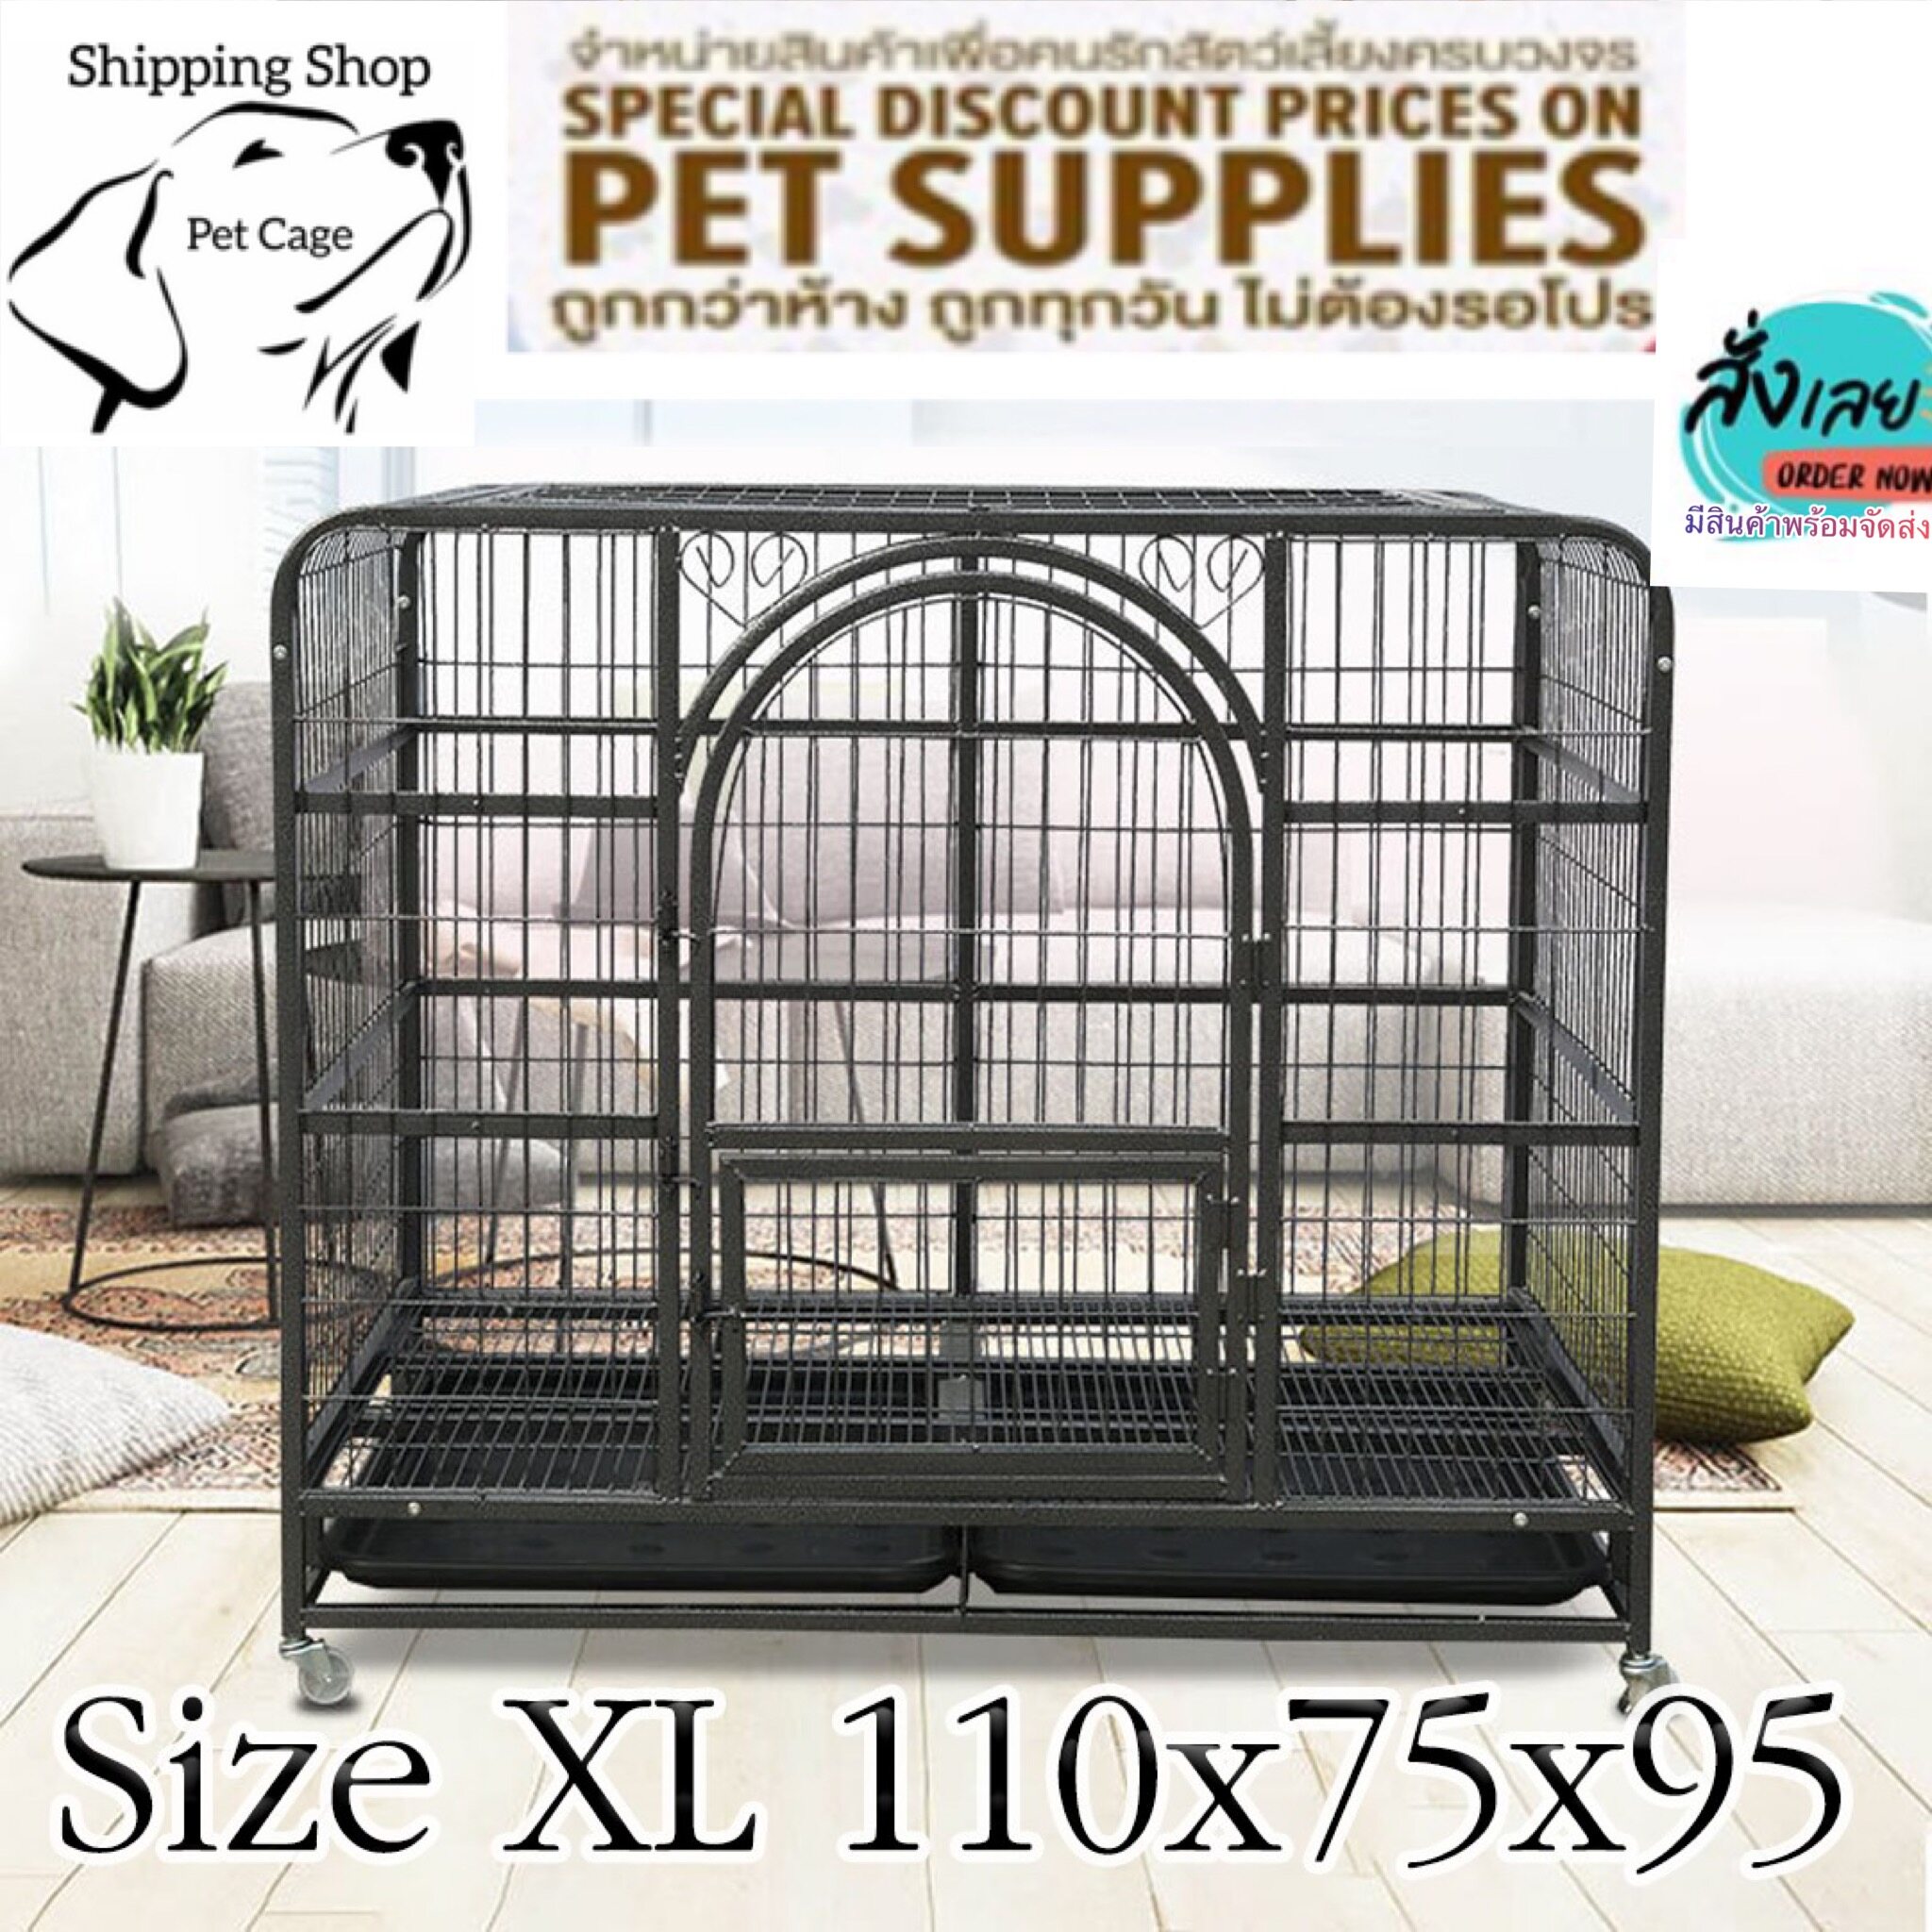 Dog Knockdown Cage กรงสุนัขขนาดใหญ่ น็อคดาวน์ ไซส์ XL พร้อมถาดรองพลาสติก   ขนาด ยาว 110 สูง 95  กว้าง 72  cm พร้อมจัดส่ง